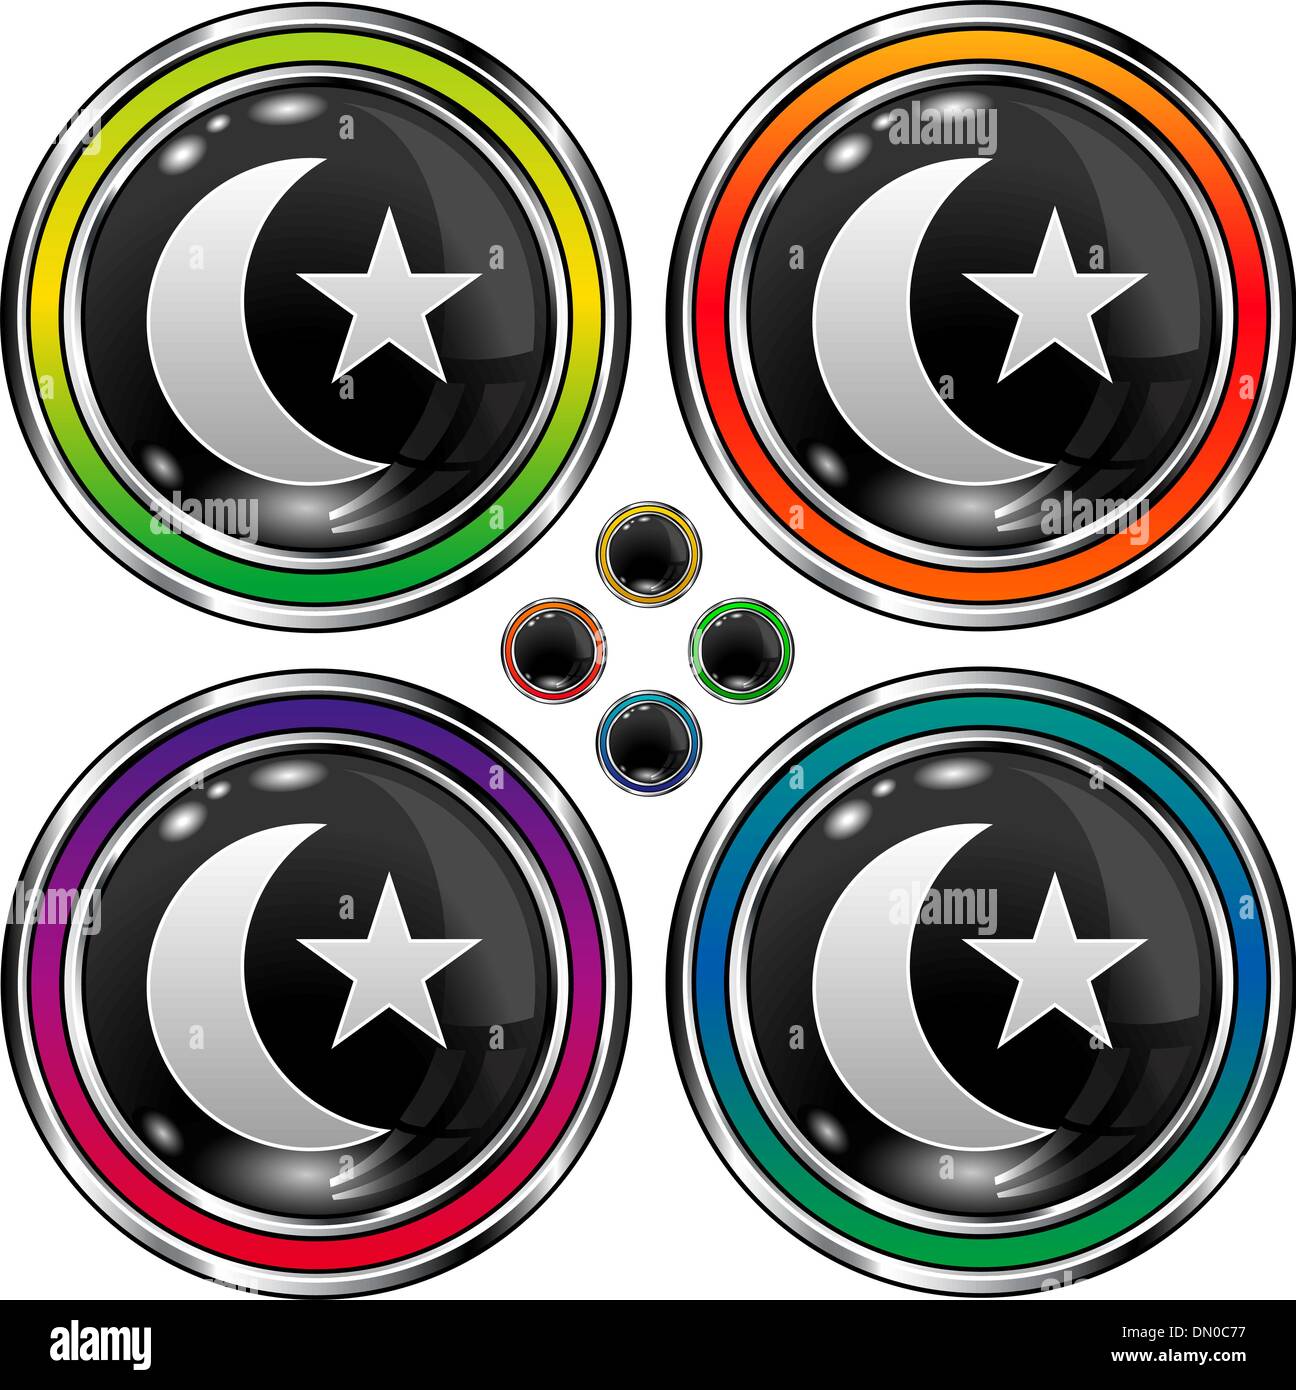 Islam e star crescent nero pulsante orb Illustrazione Vettoriale